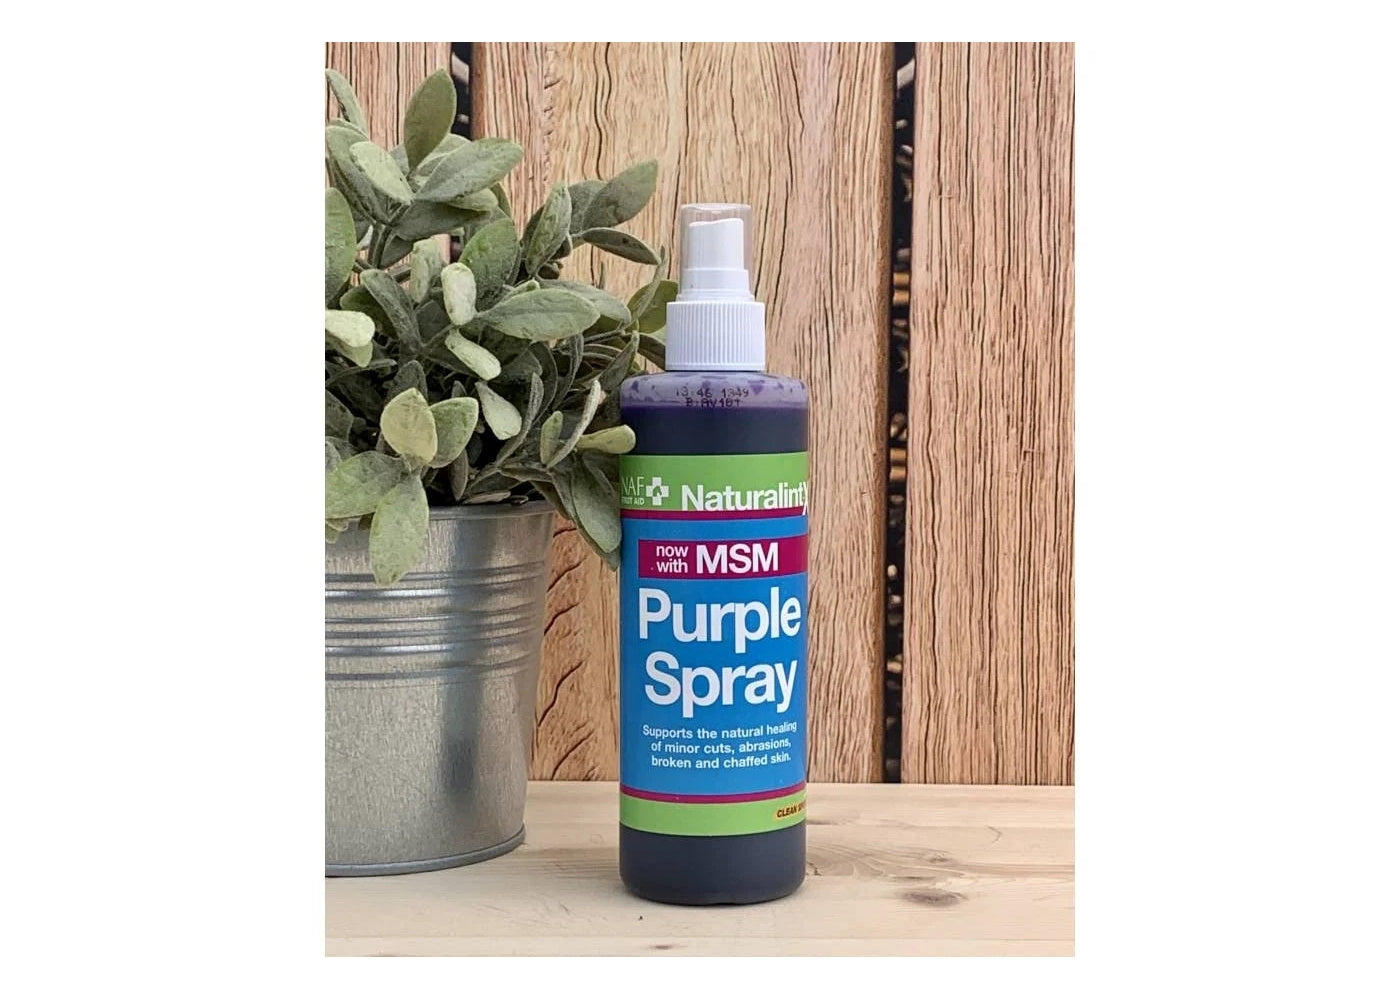 NAF NaturalintX - Purple Spray (with MSM) - Buy Online SPR Centre UK